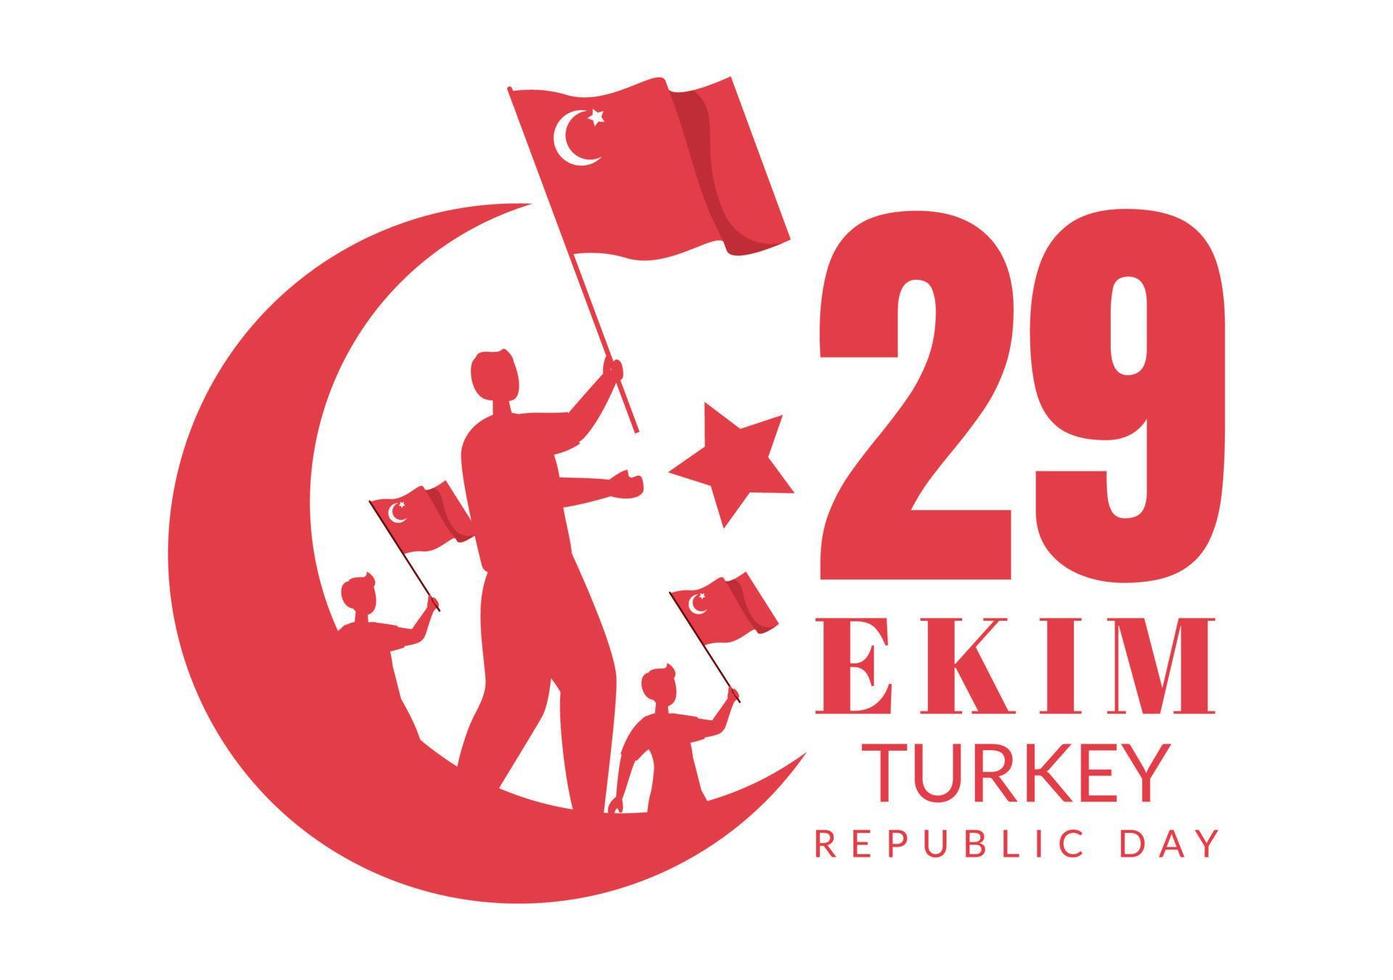 republikens dag Turkiet eller 29 ekim cumhuriyet bayrami kutlu olsun handritad tecknad platt illustration med flagga för turkisk och glad semesterdesign vektor